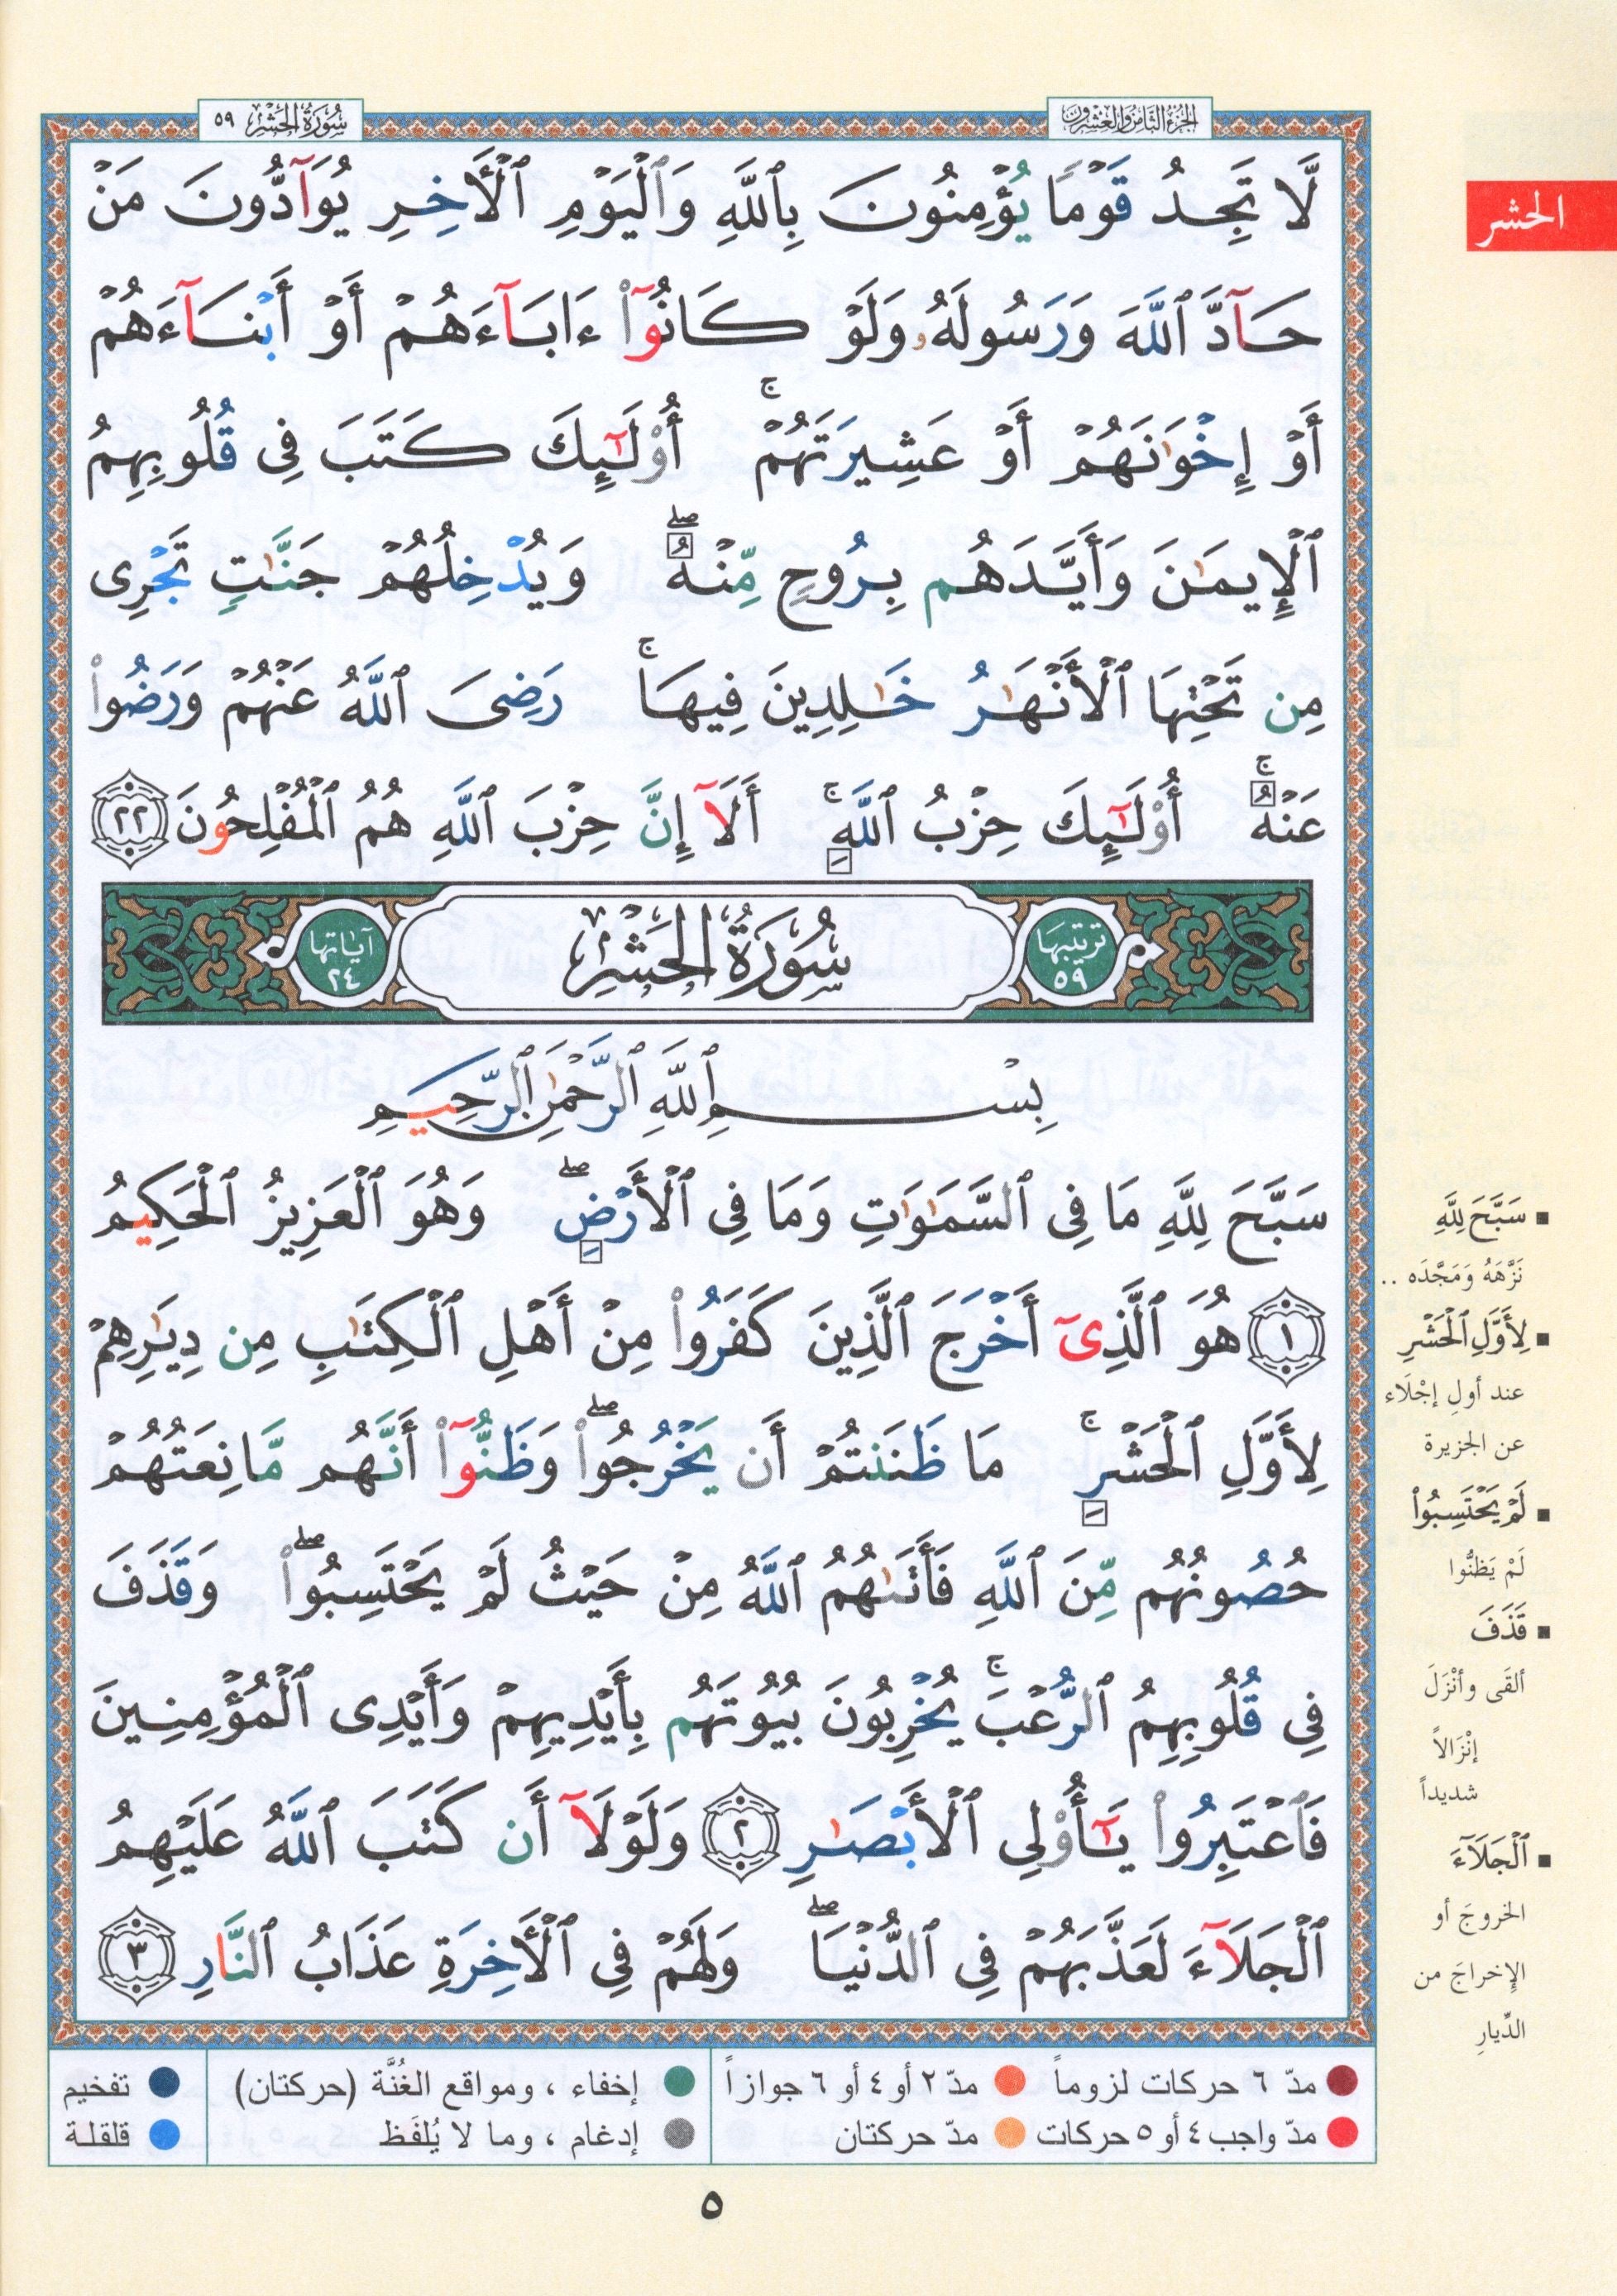 Tajweed Quran Juz' Qad Same'a Part 28 Size 7" x 9"